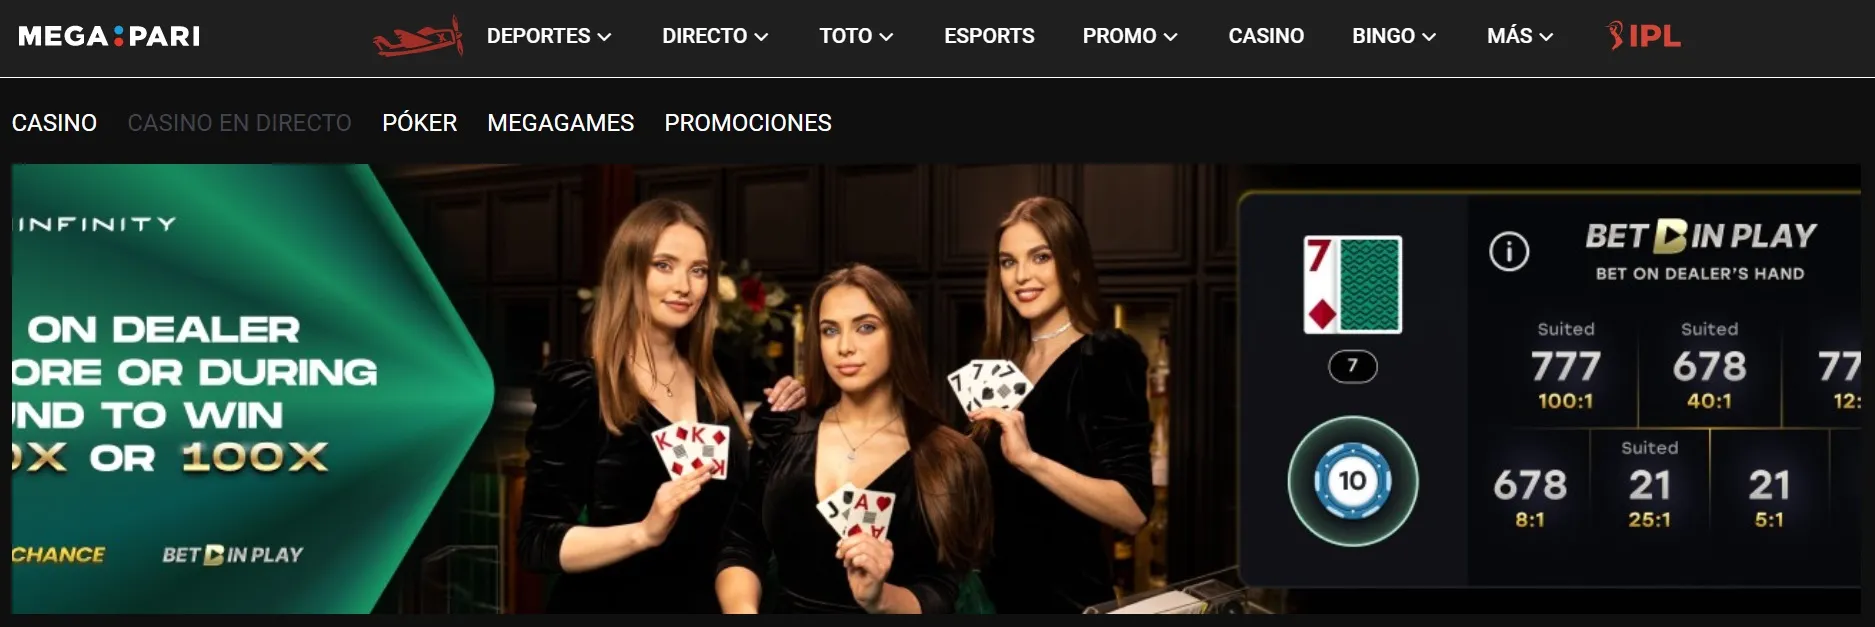 Megapari casino online